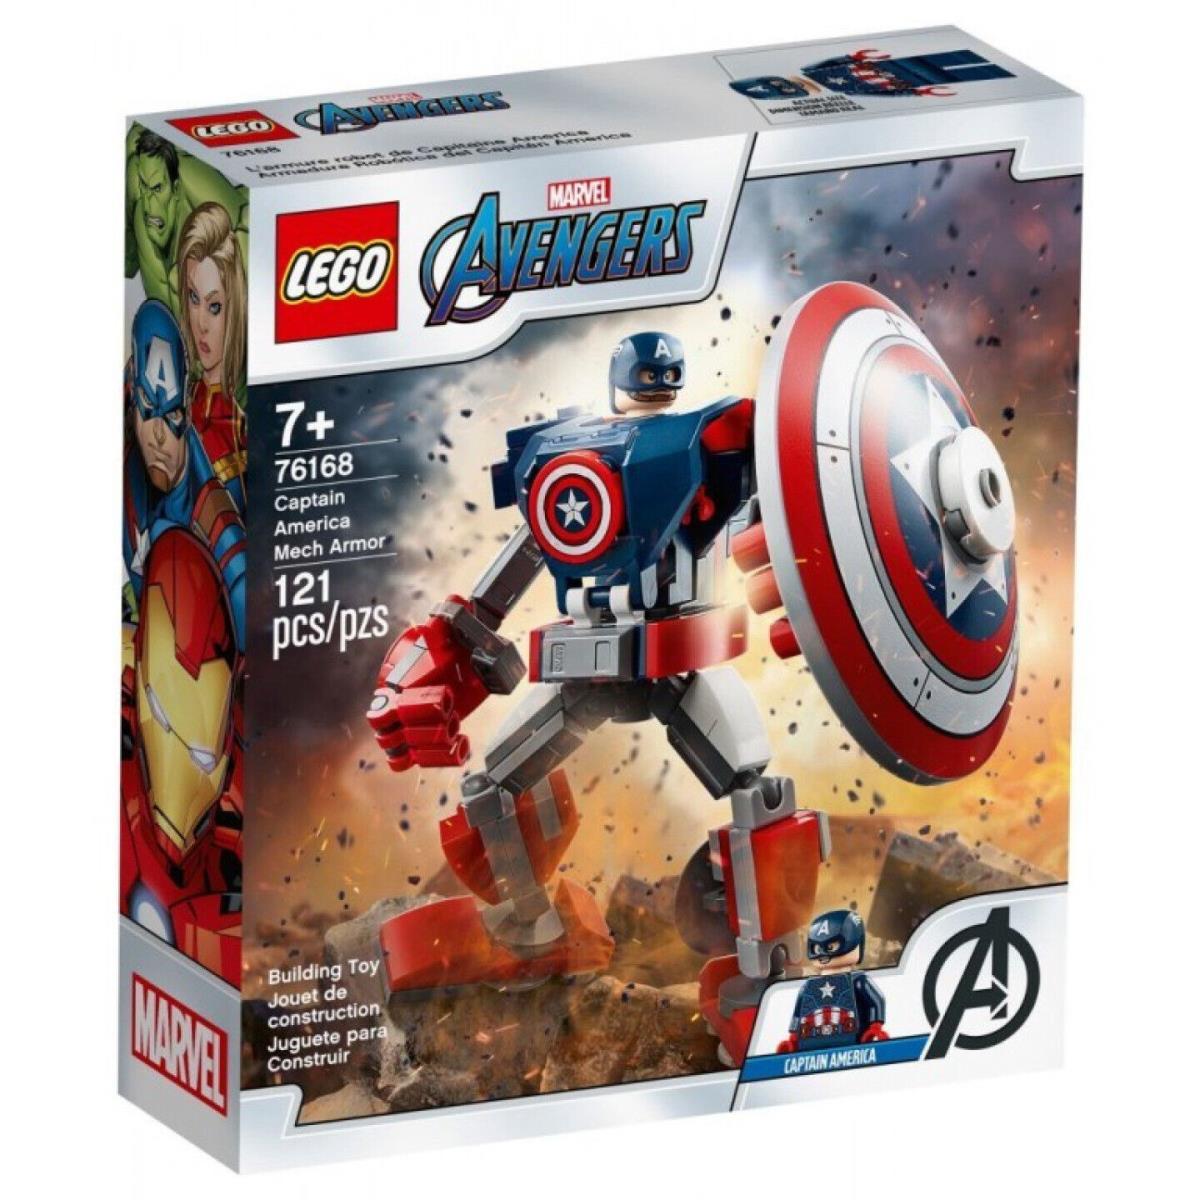 Lego Marvel Avengers Classic Captain America Mech Armor 76168 Building Kit